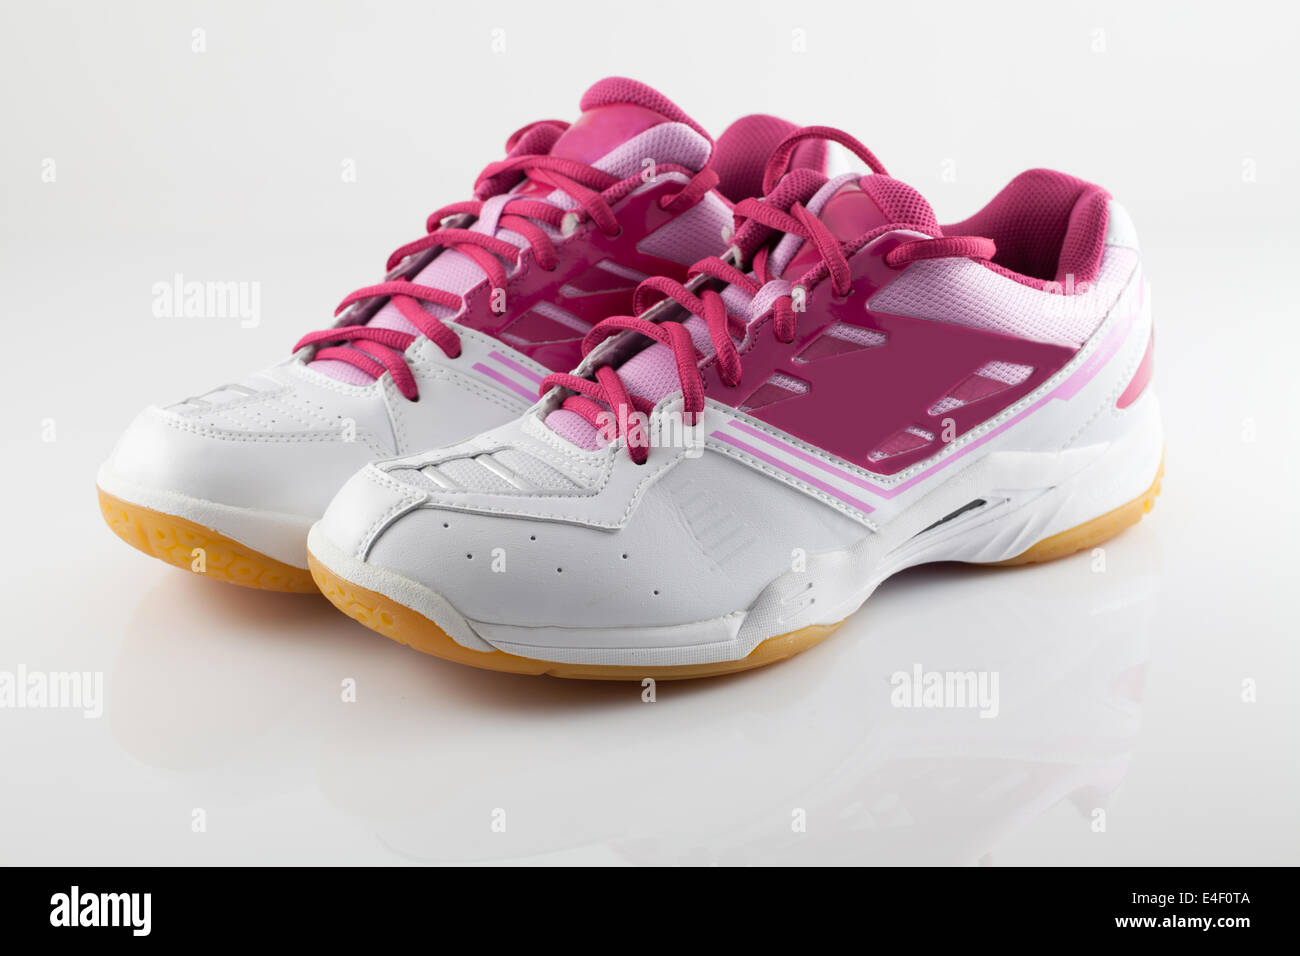 Chaussures de badminton sur couleur rose isoler Banque D'Images